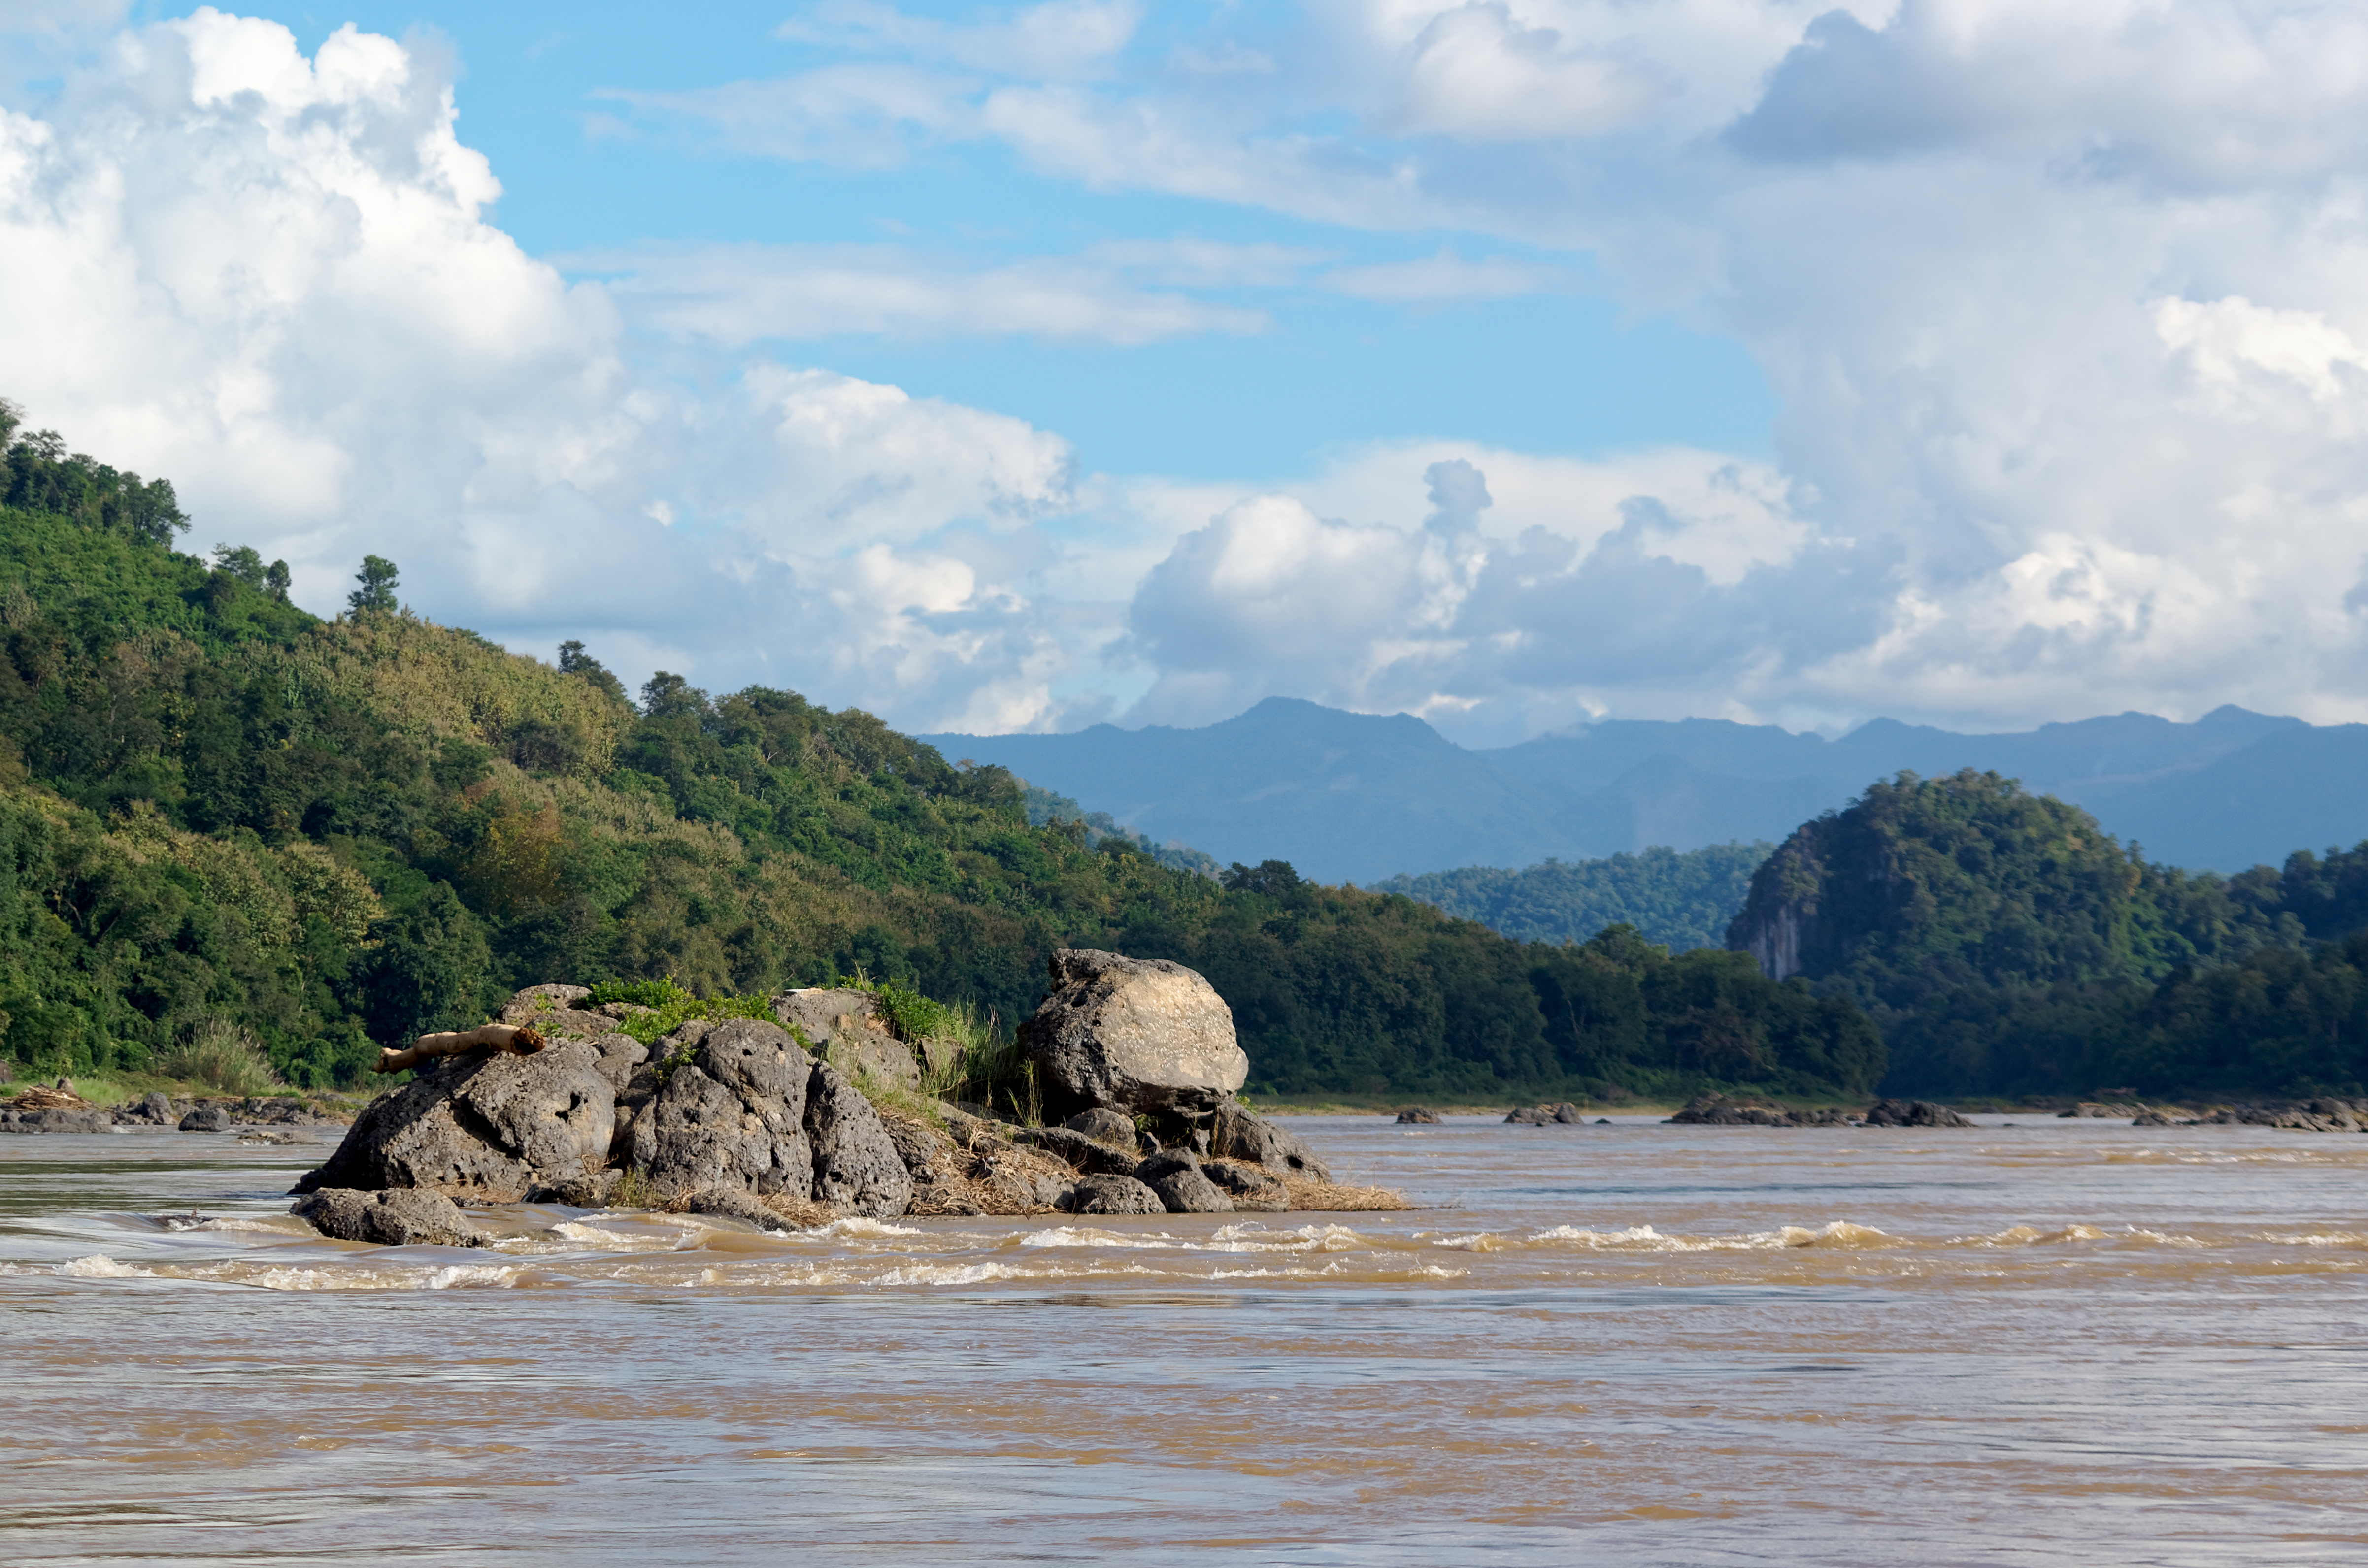 20171110 Mekong River Luang Prabang Province Laos 0983 DxO